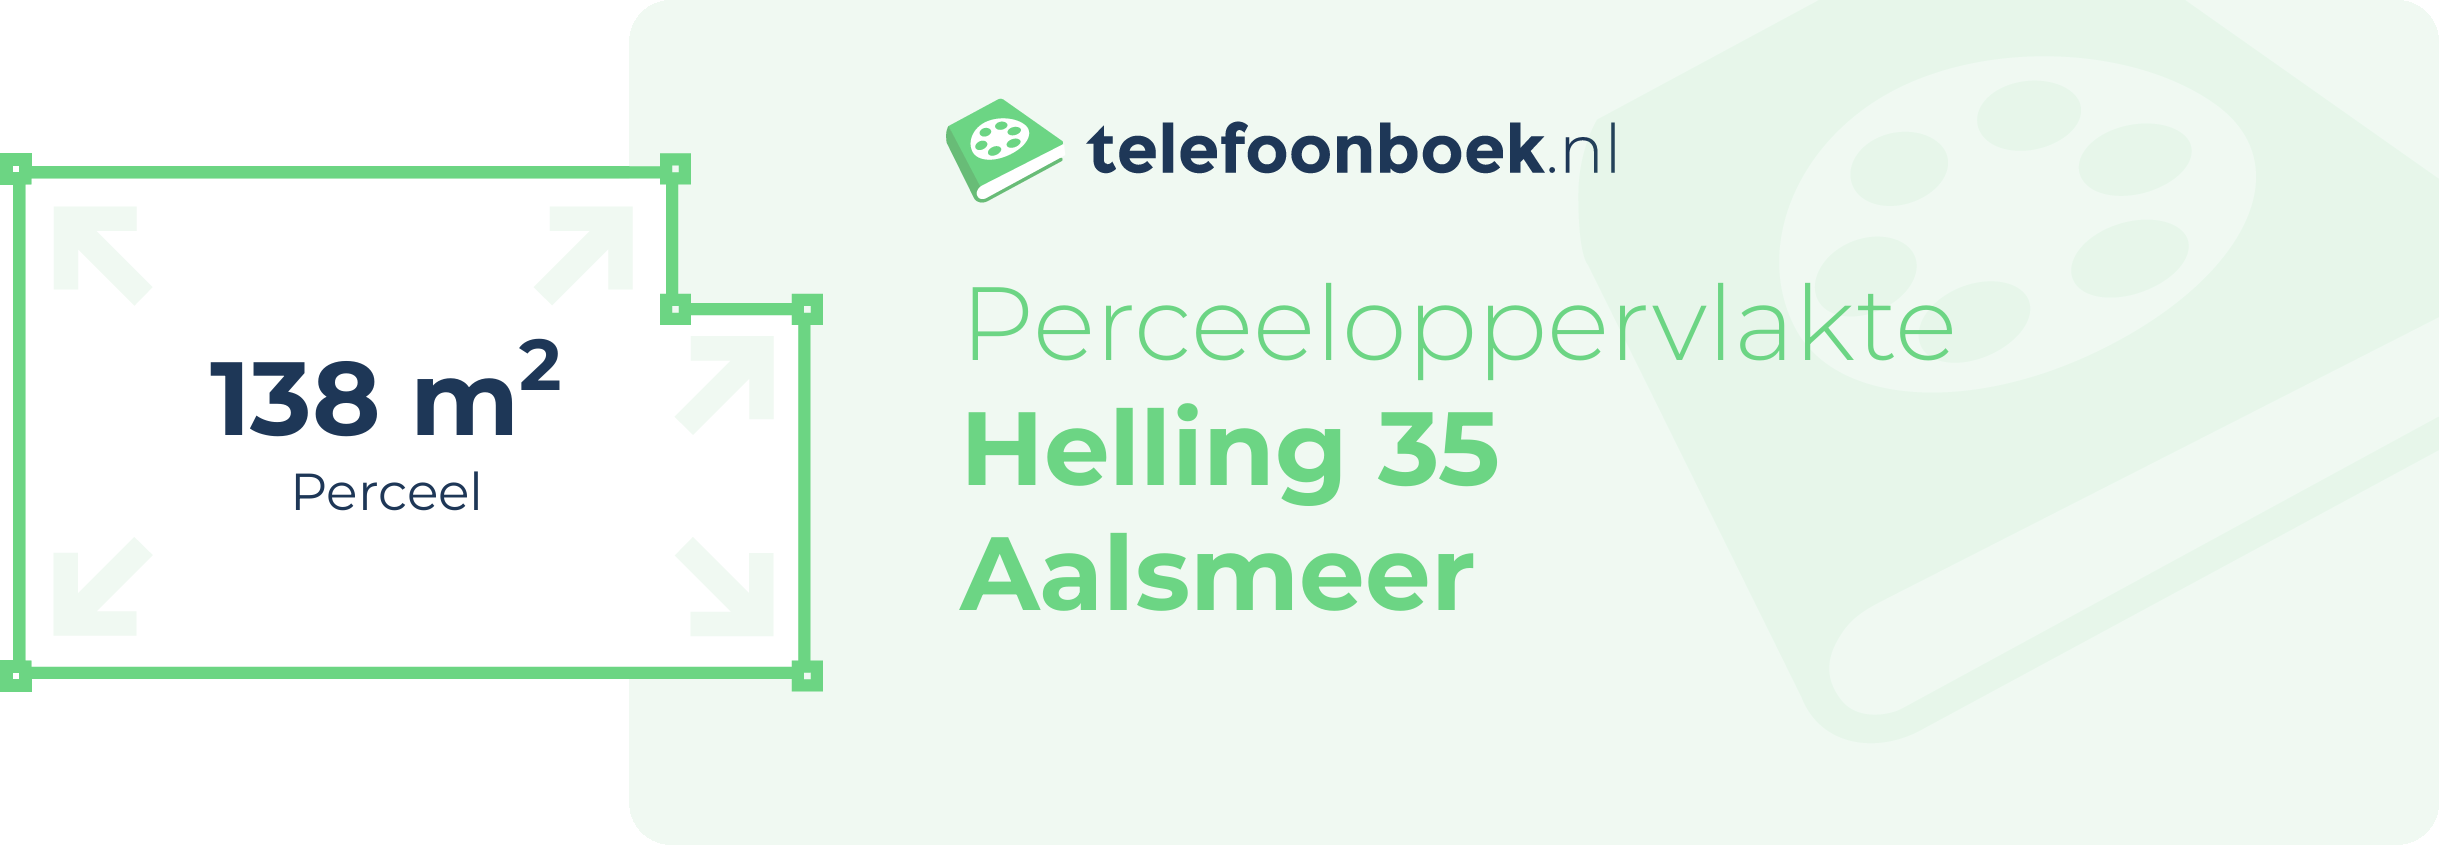 Perceeloppervlakte Helling 35 Aalsmeer